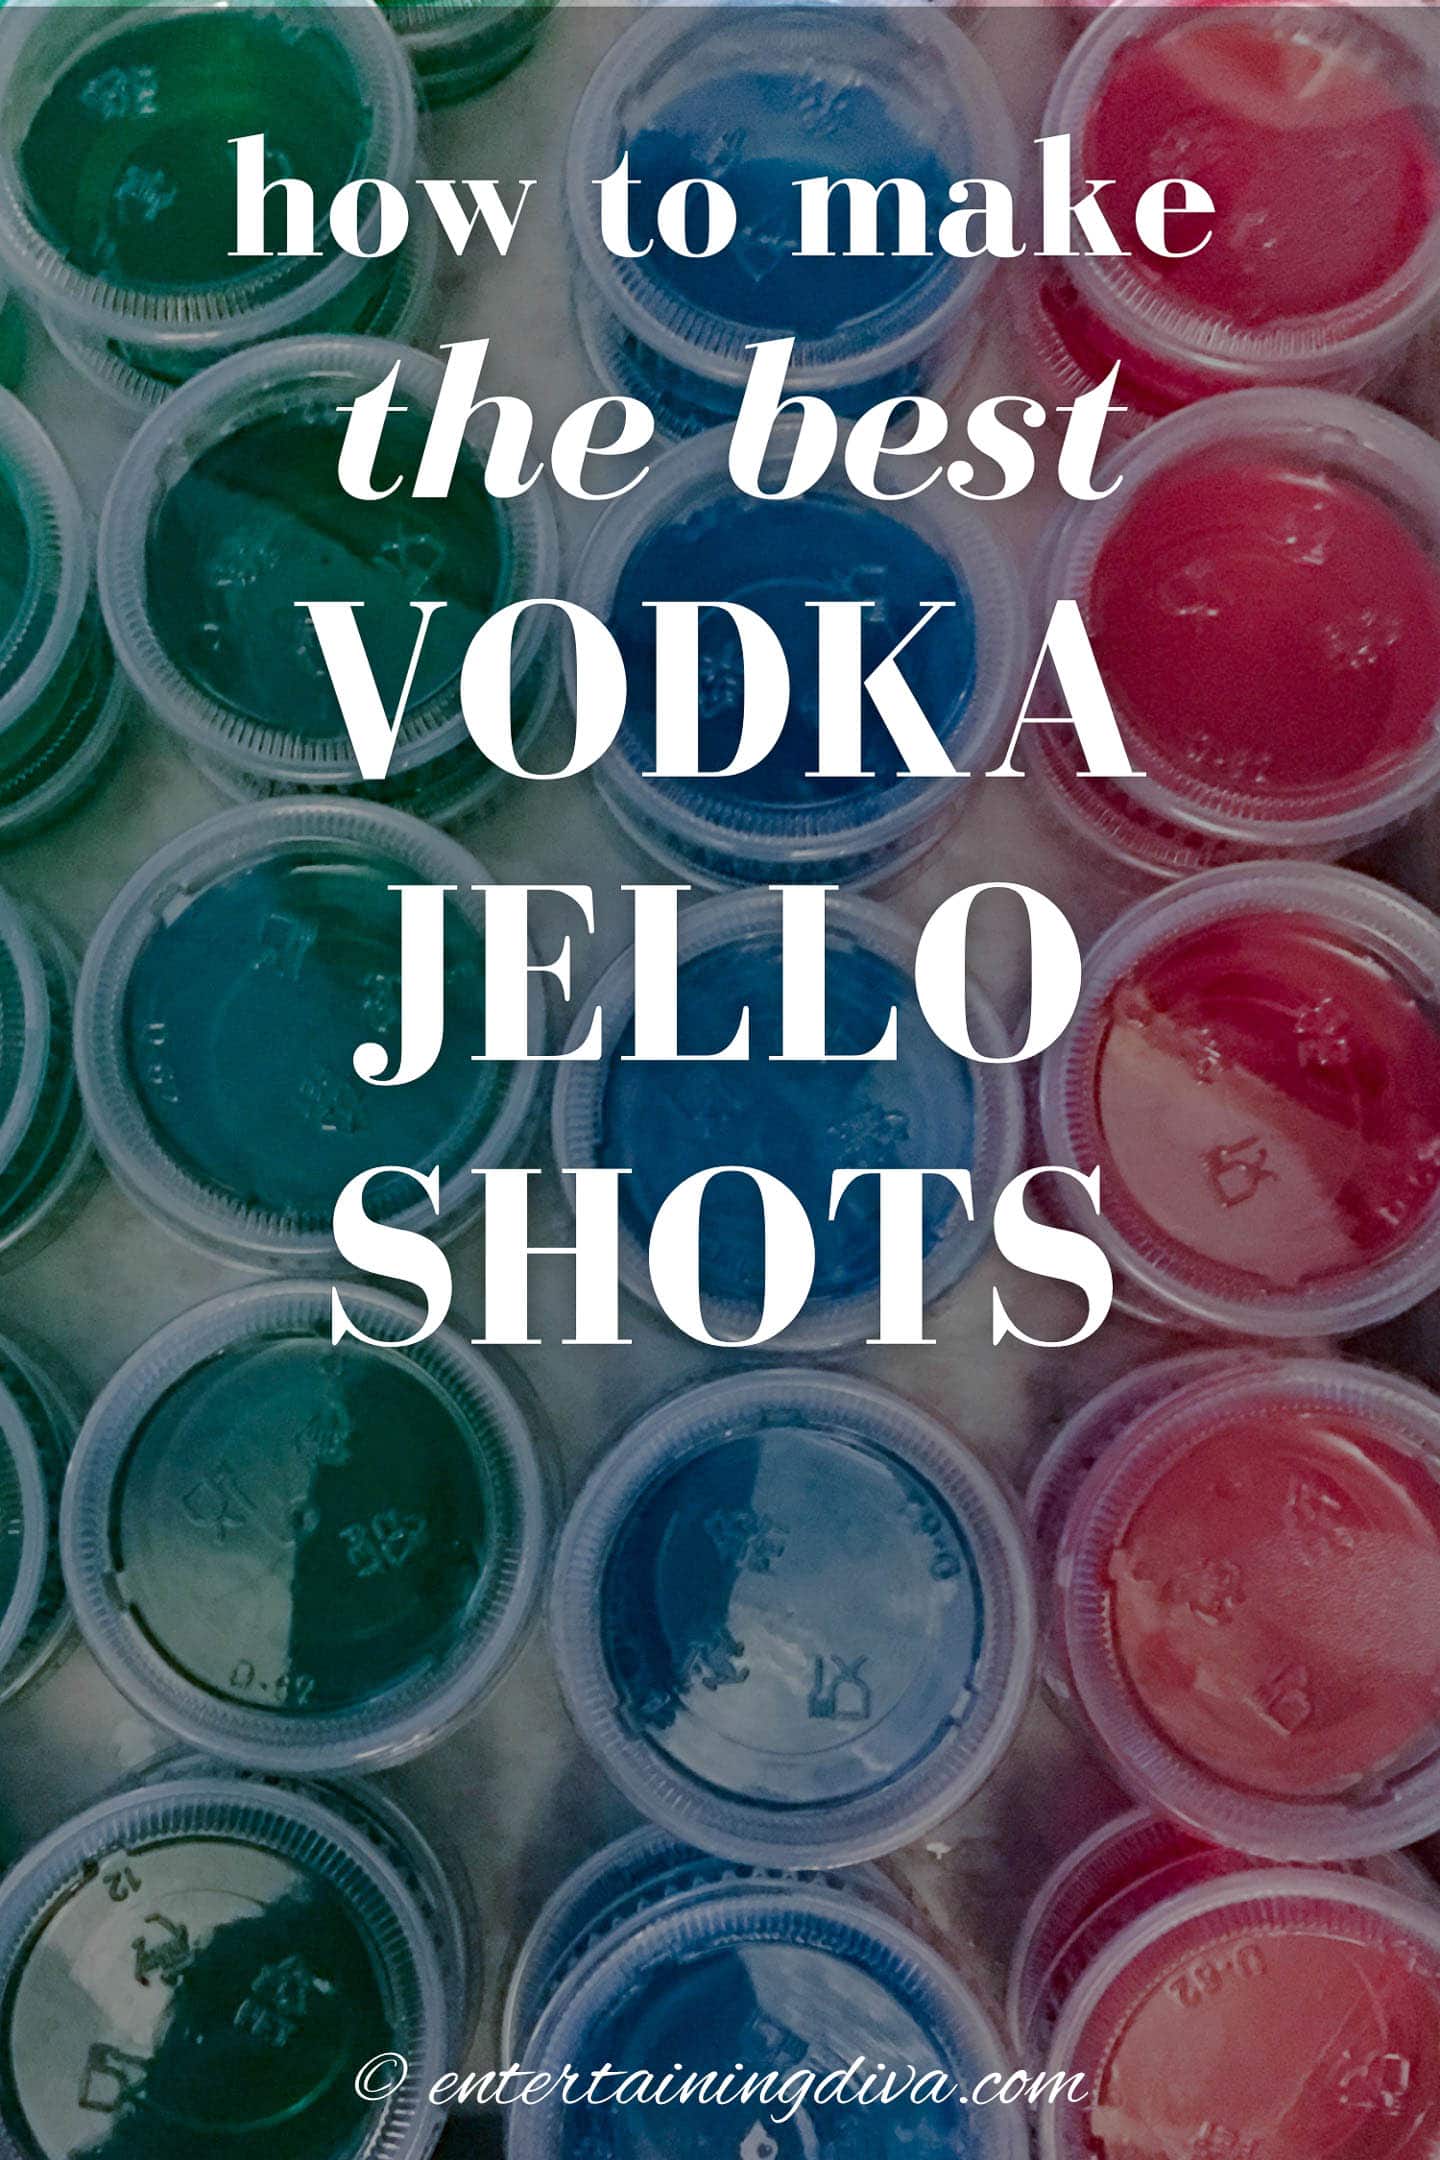 How to make vodka Jello shots